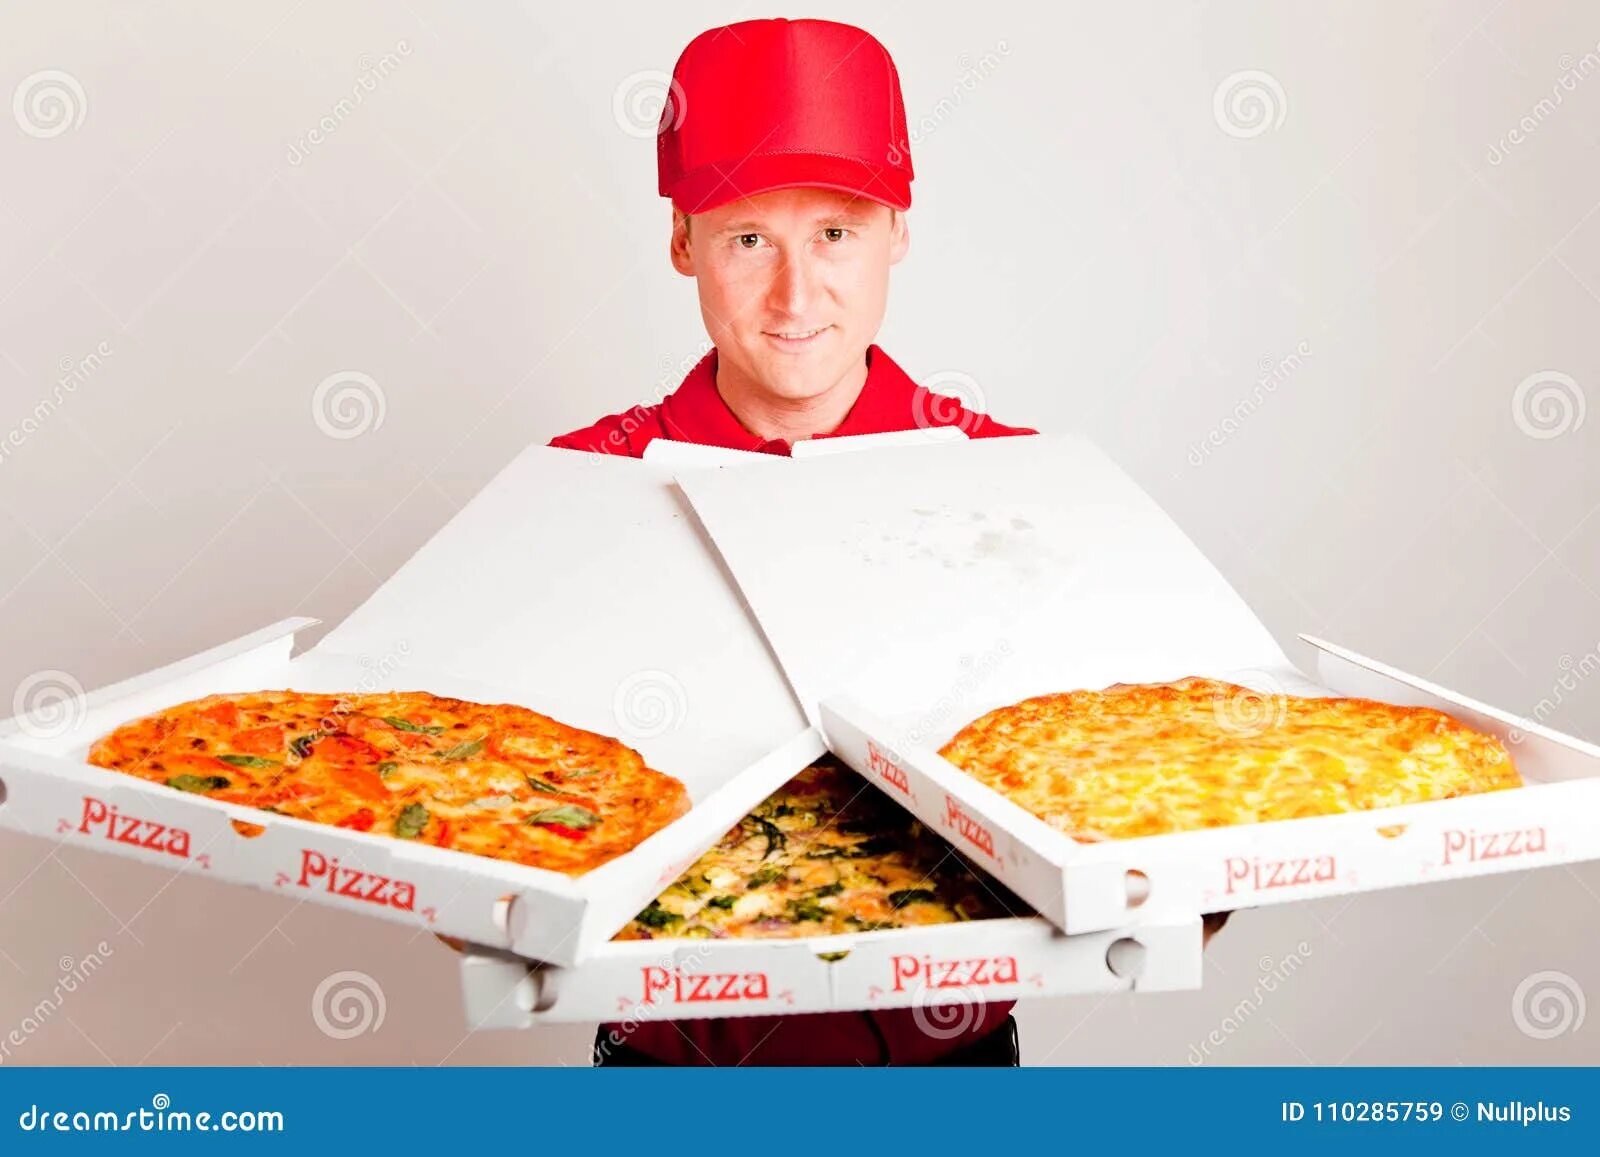 Доставщик пиццы и золотой 65. Доставщик пиццы. Принес пиццу. Курьер принес пиццу. Доставщик пиццы в Америке.